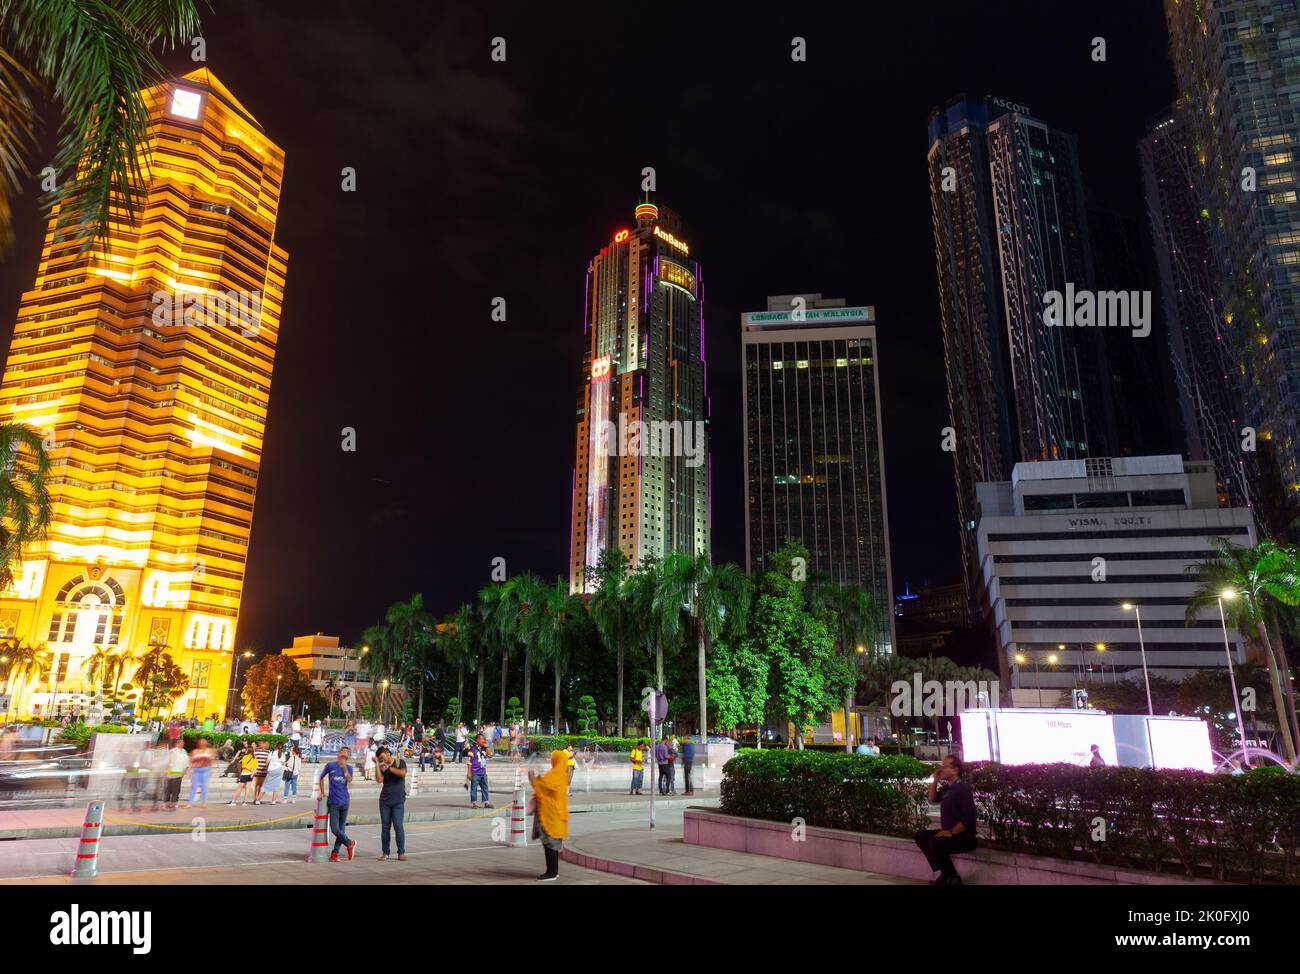 Kuala Lumpur, Malaisie - 28 novembre 2019: Centre ville de Kuala Lumpur vue de nuit sur la rue avec le bâtiment de la Banque publique Banque D'Images